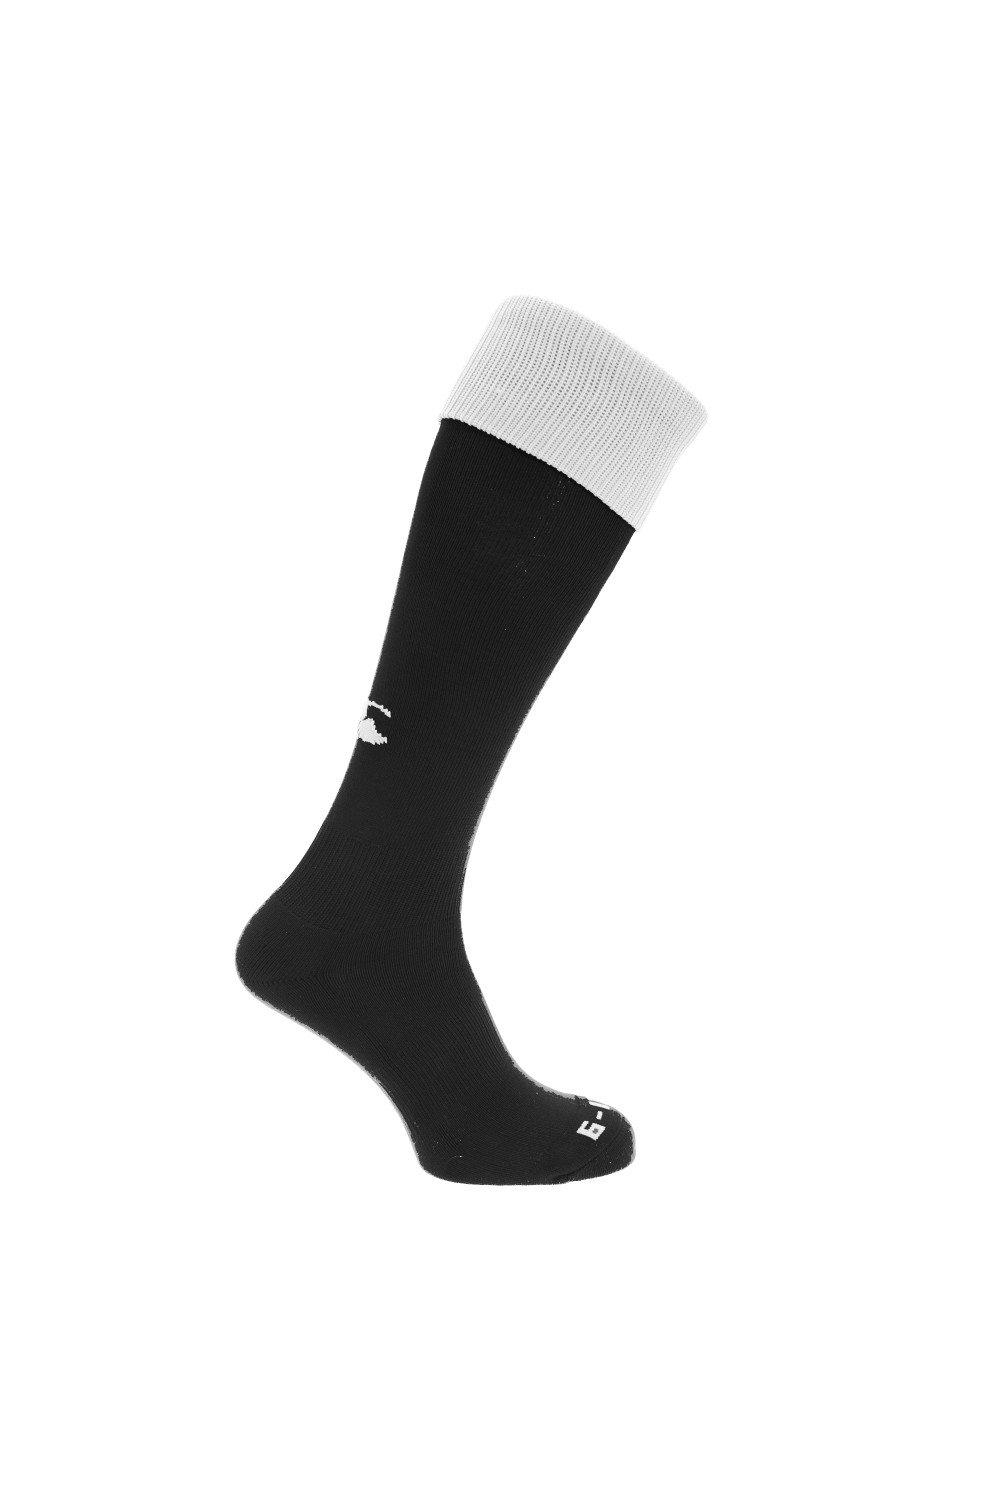 Спортивные носки для игры в регби Canterbury, черный спортивные брюки overcome с контрастными деталями